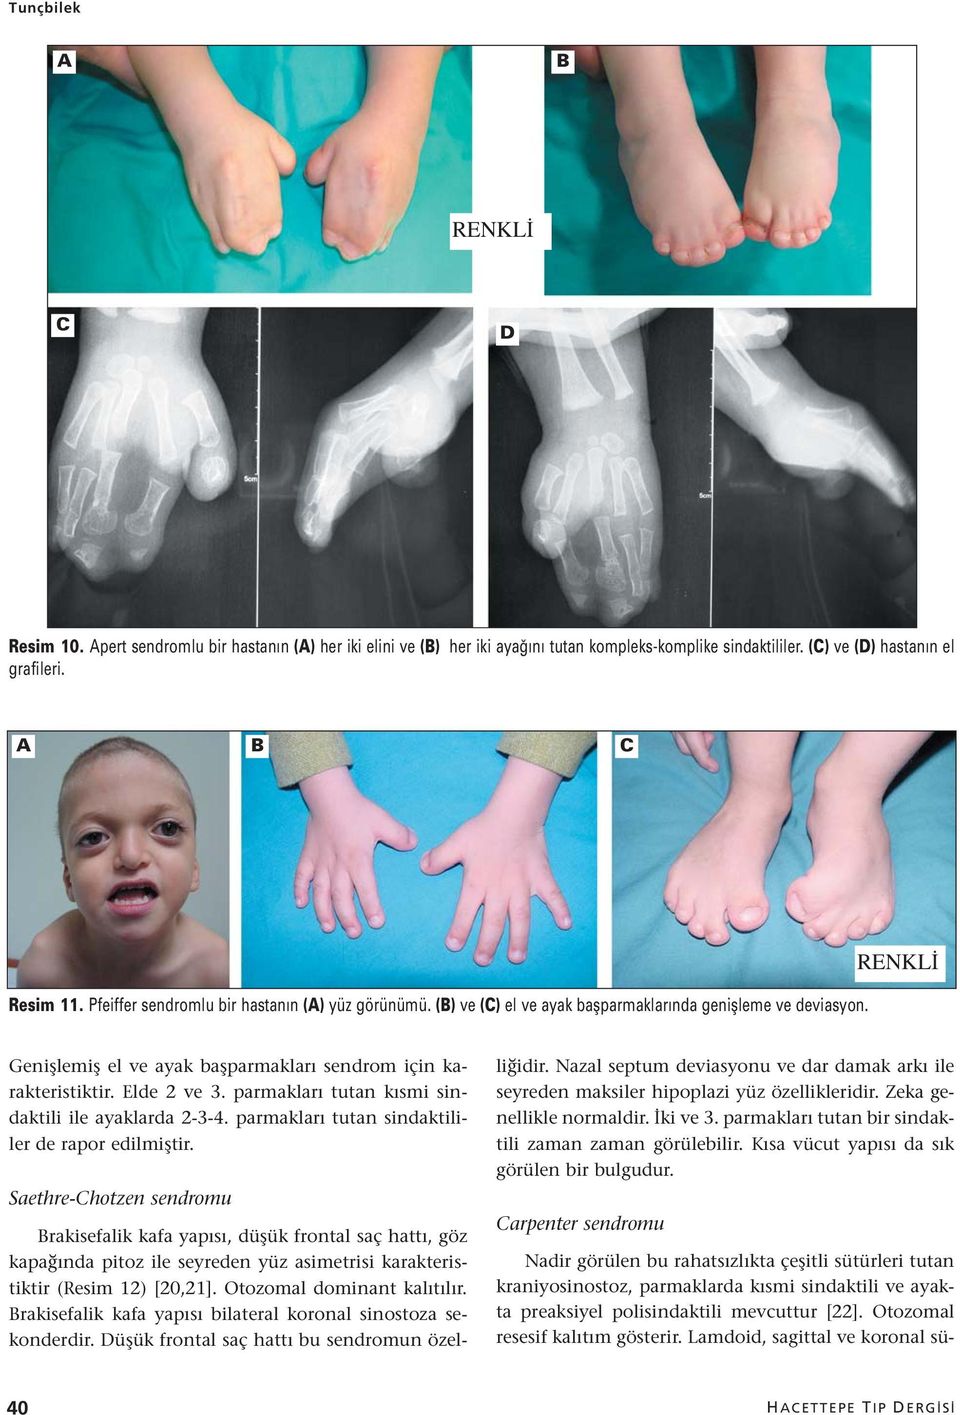 parmakları tutan kısmi sindaktili ile ayaklarda 2-3-4. parmakları tutan sindaktililer de rapor edilmiştir.